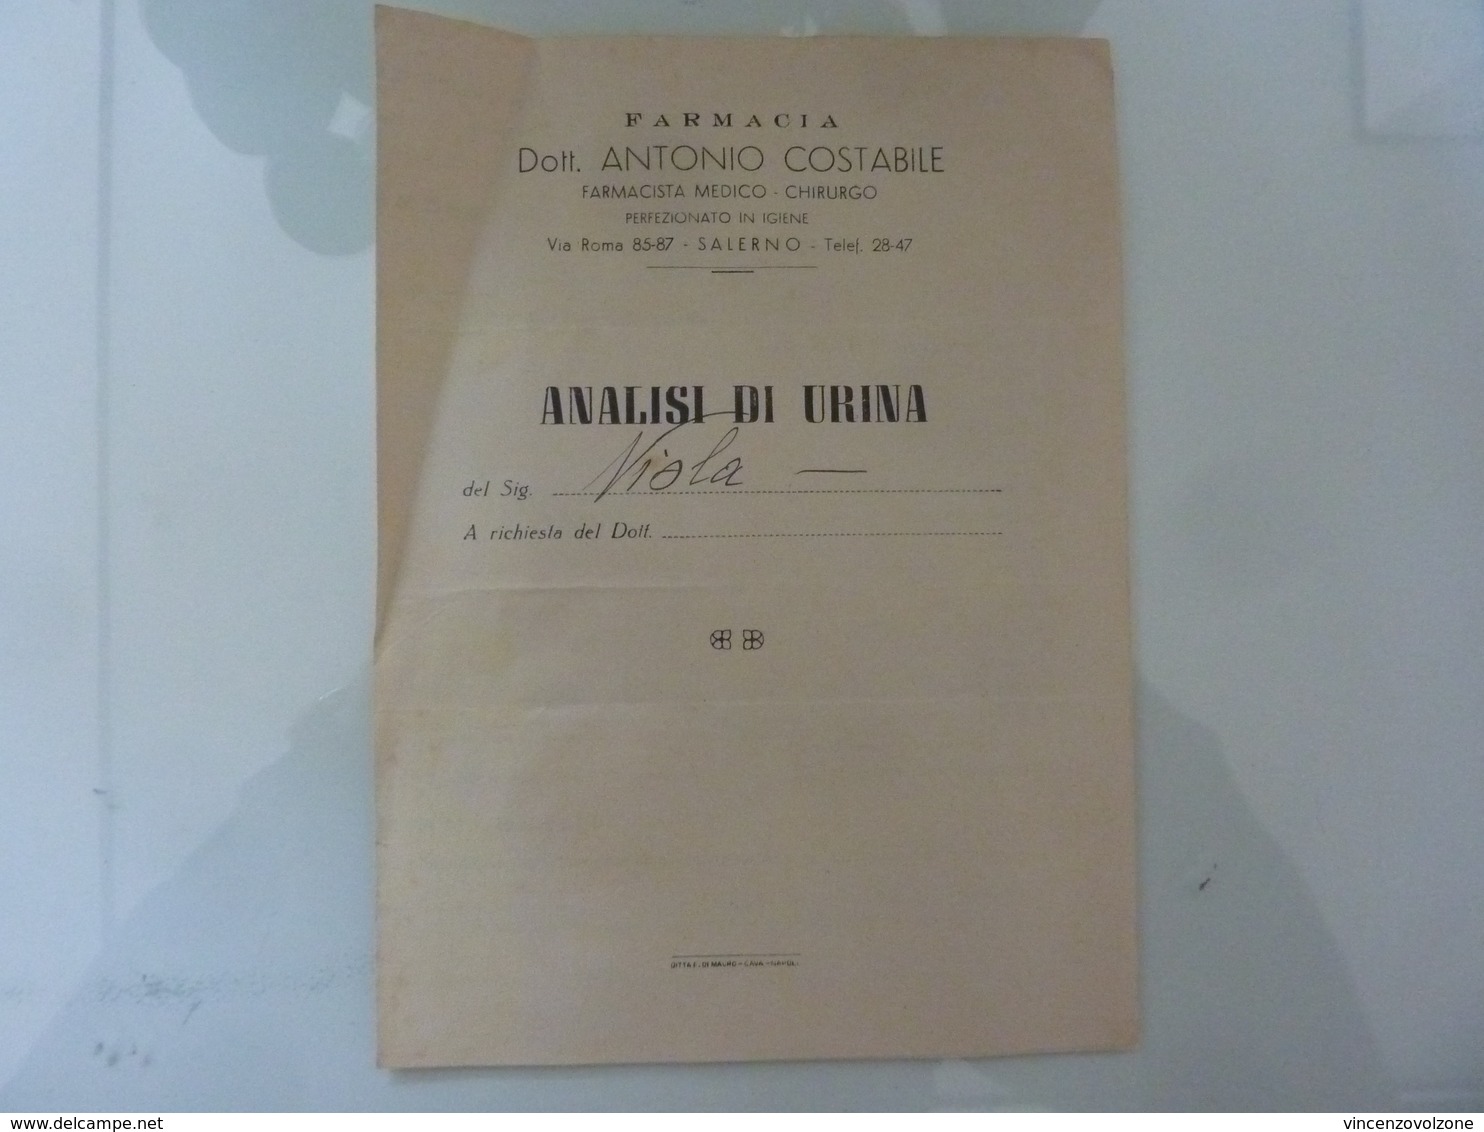 Documento "FARMACIA Dott. ANTONIO COSTABILE Farmacista Medico Chirurgo, Salerno  ANALISI DI URINA" 1948 - Manuscripts